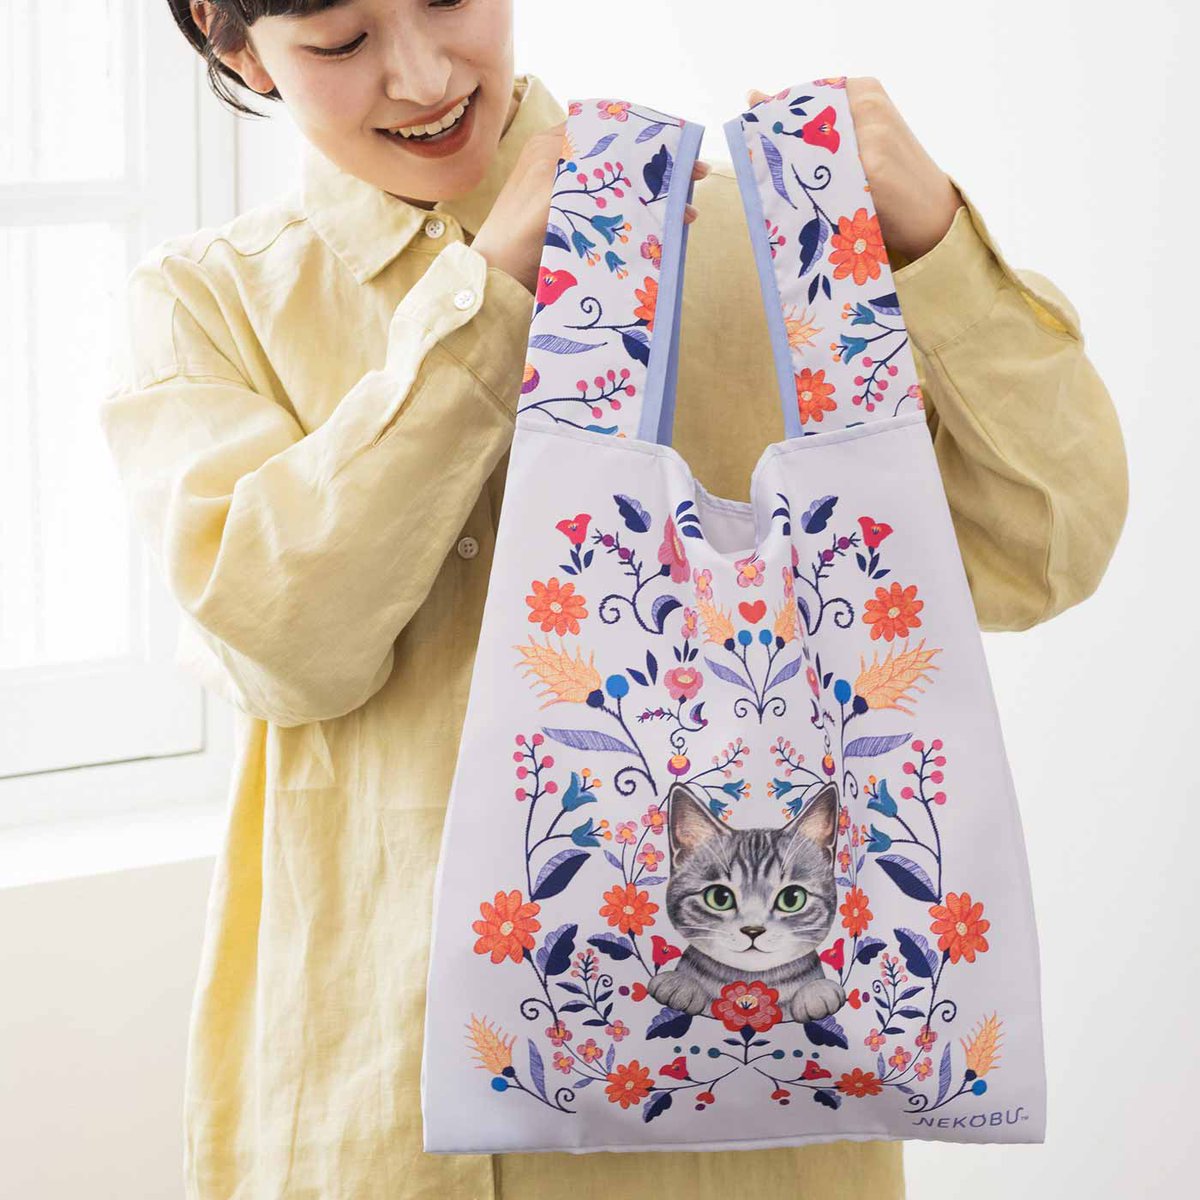 「キュートな猫さん×お花の雑貨を毎月お届けやわらかなパステルカラーで、大人に似合う」|フェリシモ「猫部」のイラスト